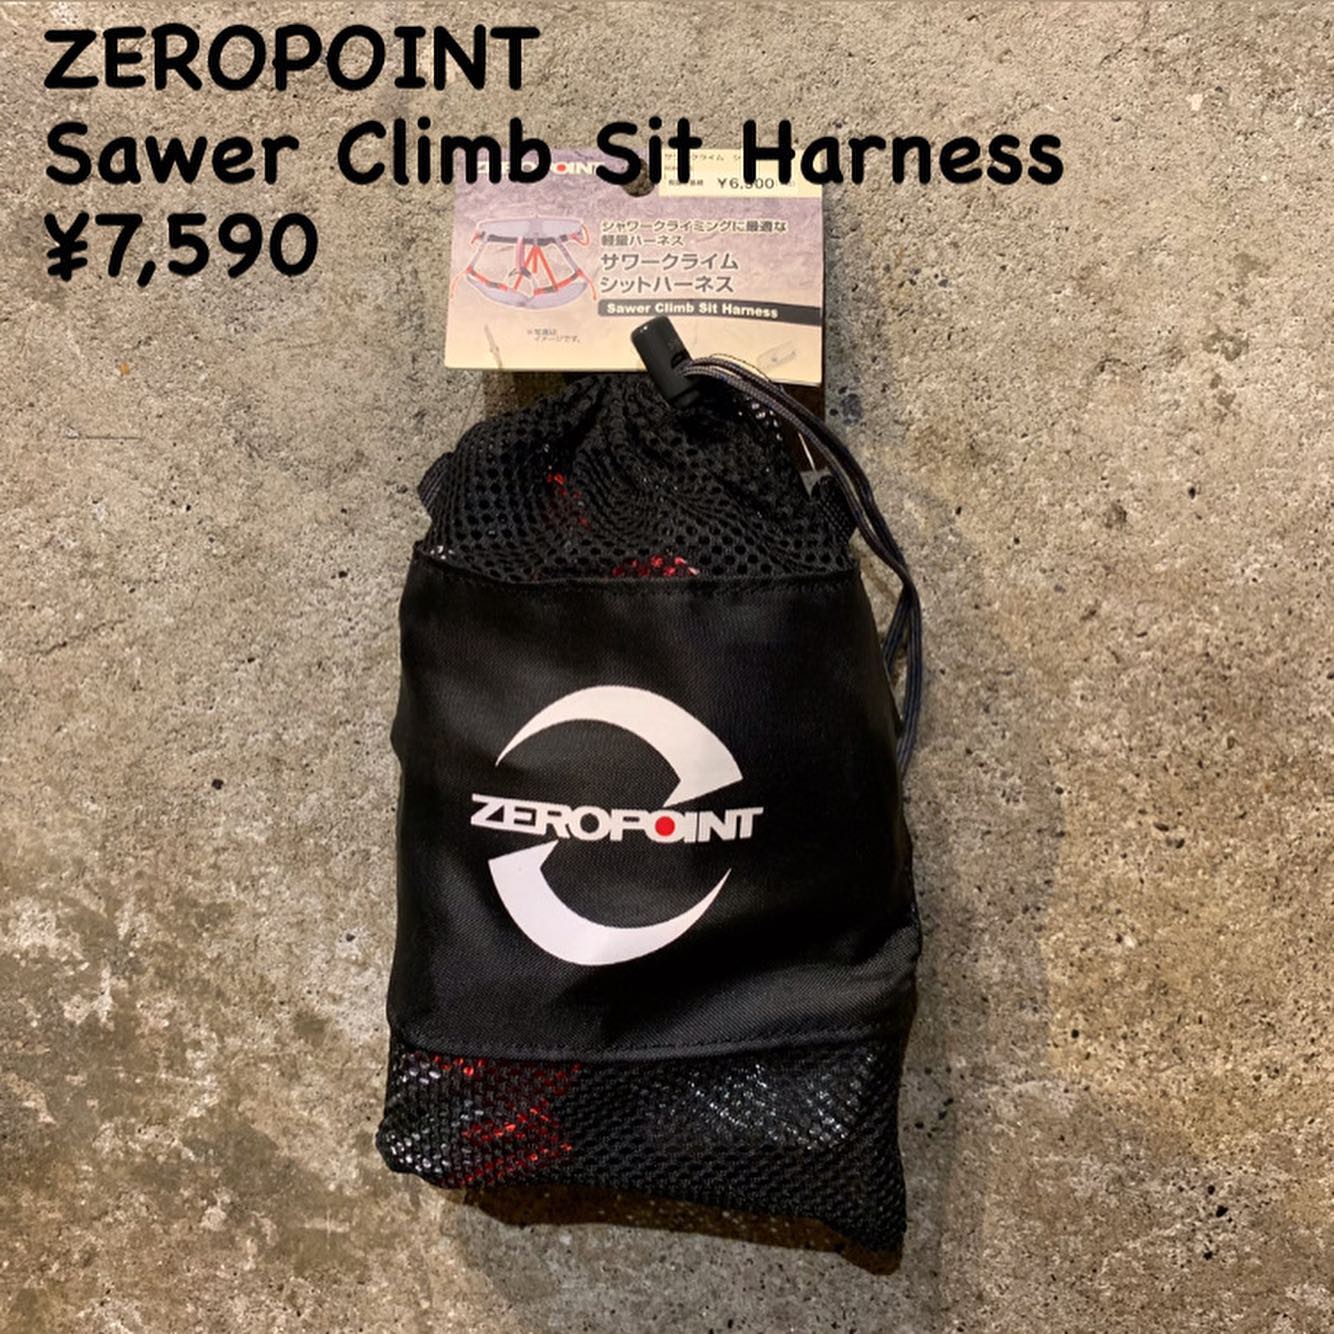 シャワークライミングに最適な軽量ハーネス『ZEROPOINT サワークライム シットハーネス』のご紹介